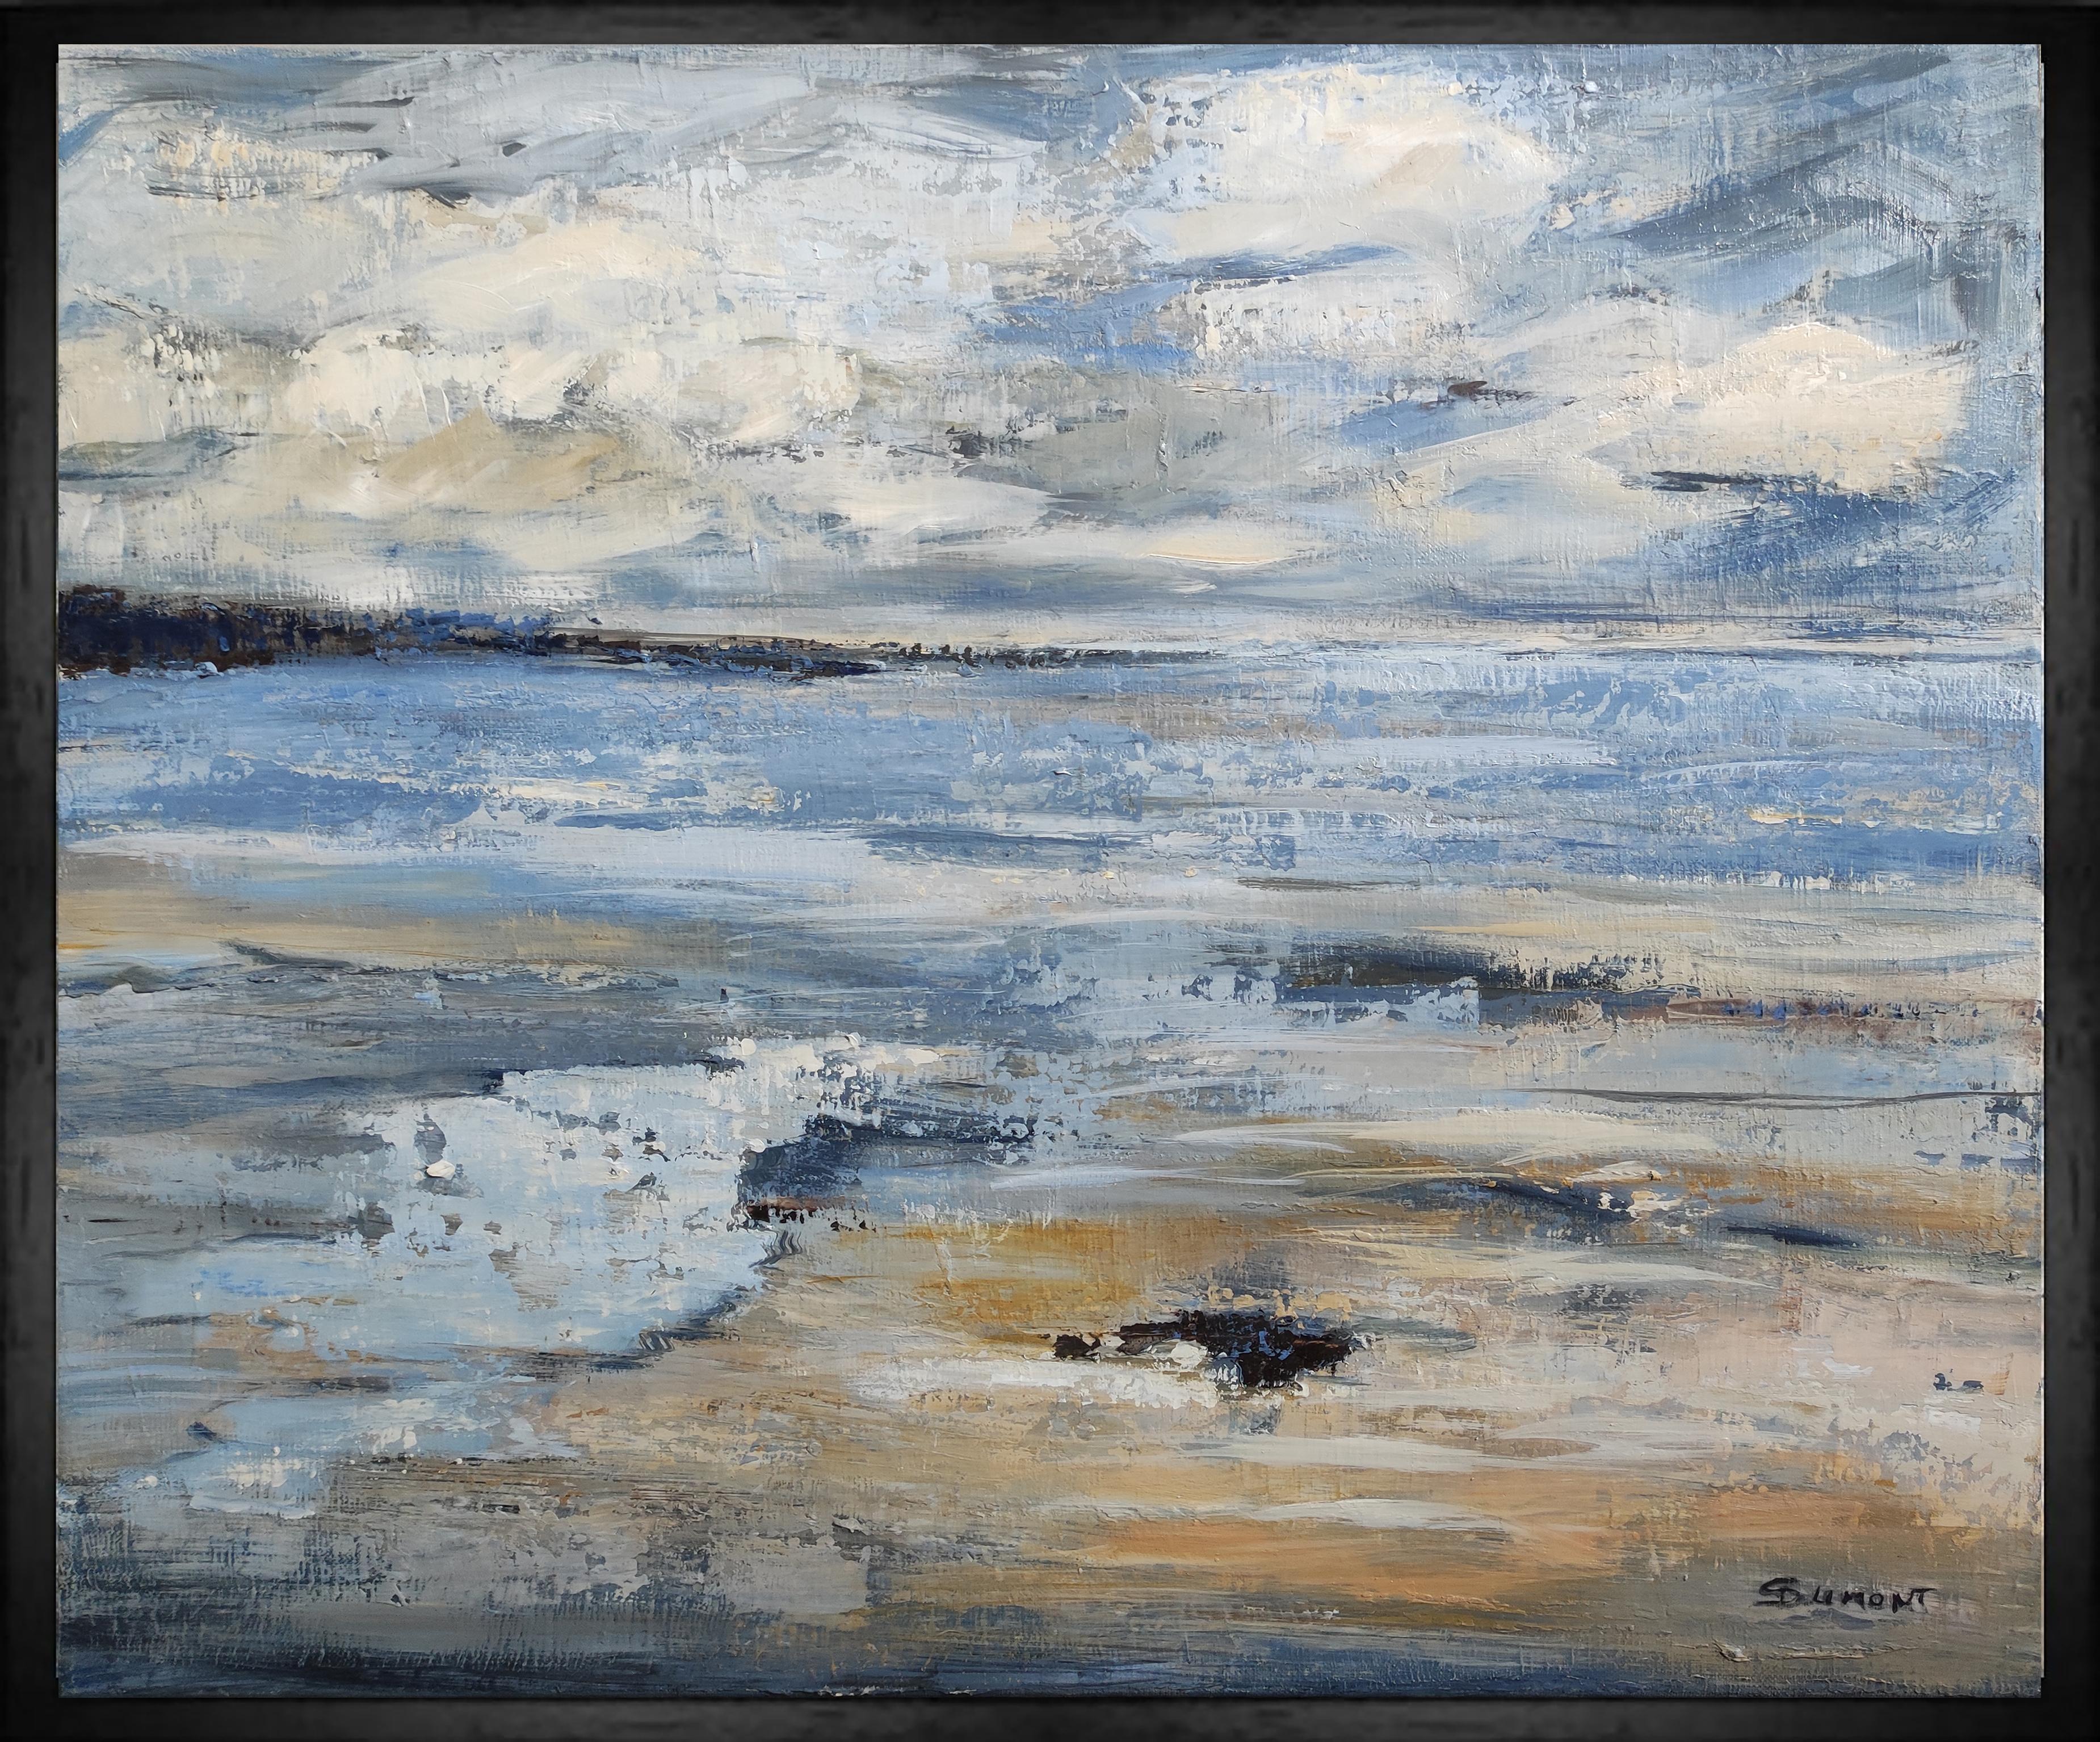 Abstract Painting SOPHIE DUMONT - paysage marin, bord de mer bleu, semi abstrait, huile sur toile, ciel, expressionnisme